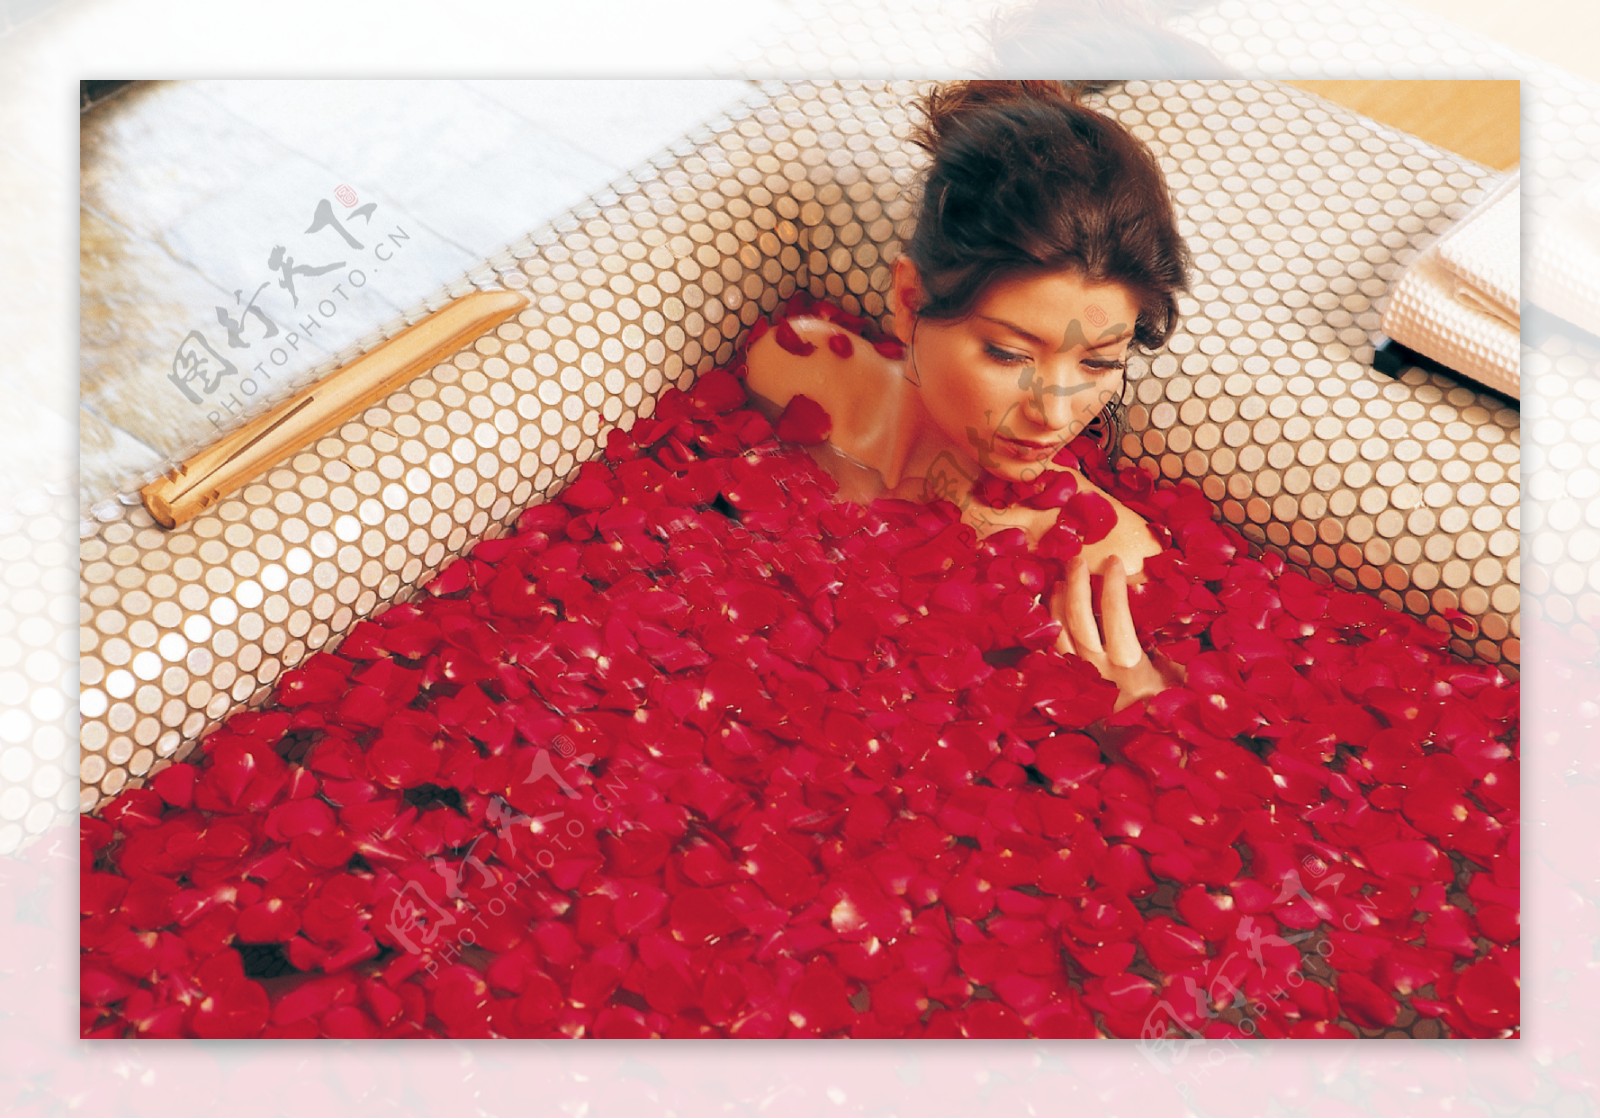 与玫瑰花瓣的浪漫泡末浴 库存照片. 图片 包括有 装饰, 内部, 健康, 关心, 家庭, 浴室, 豪华 - 113942708